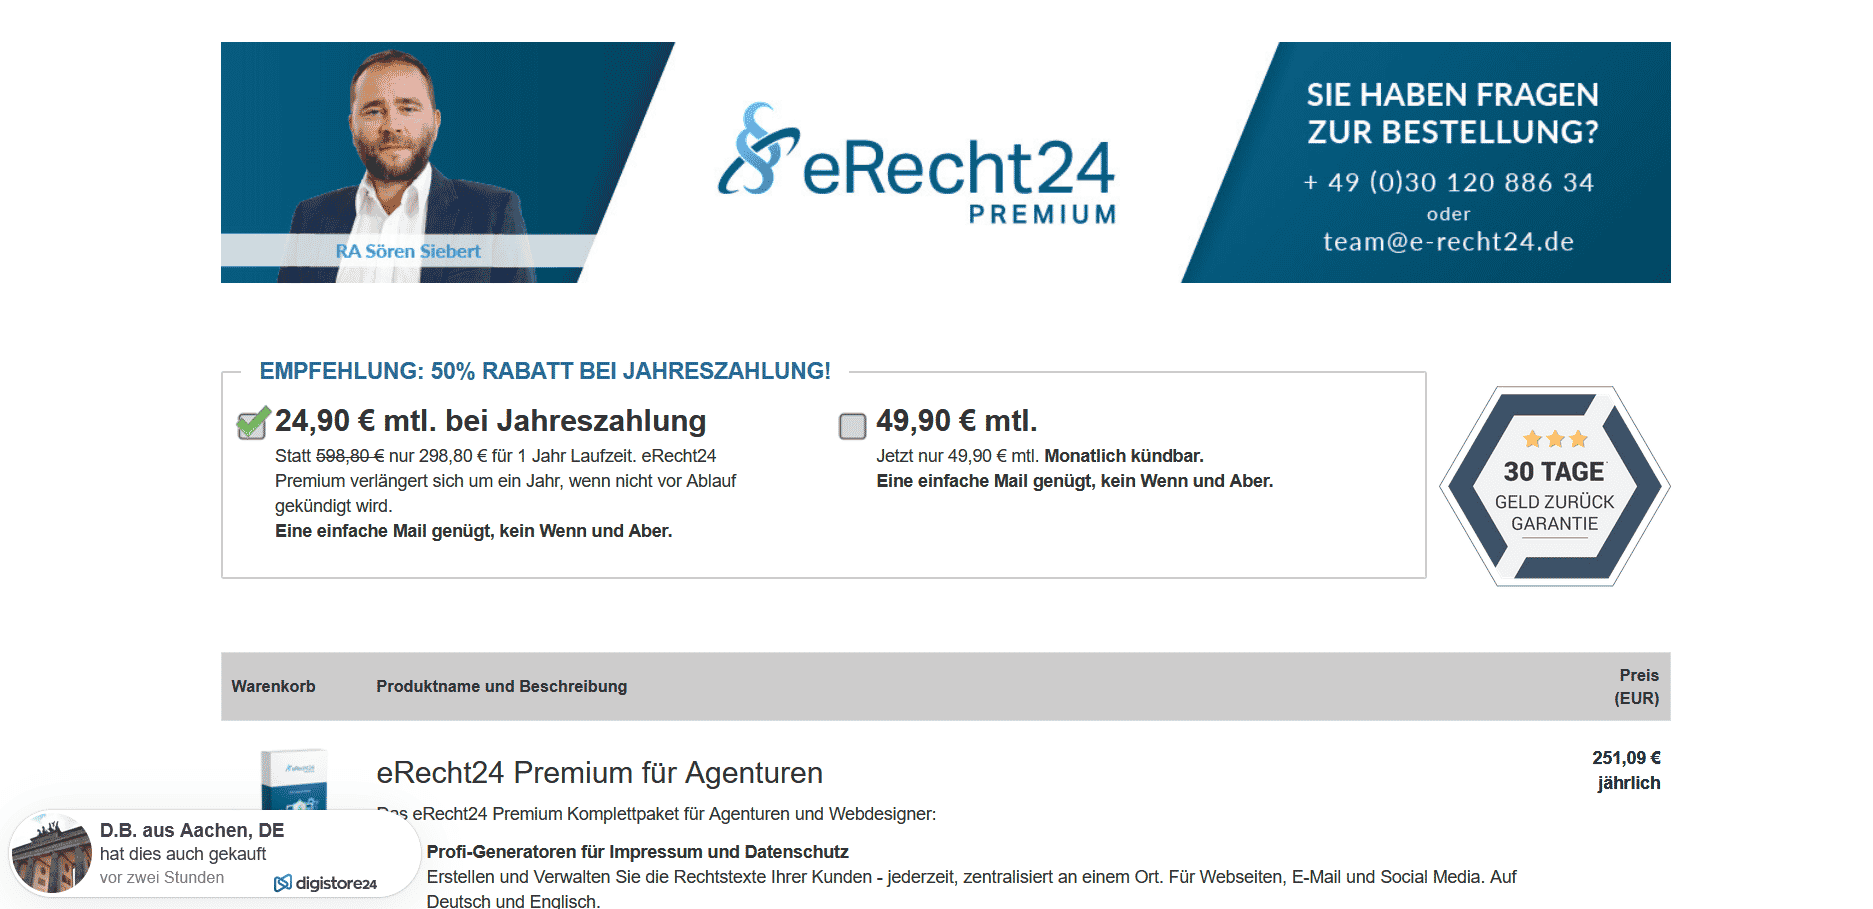 eRecht24 premium kosten